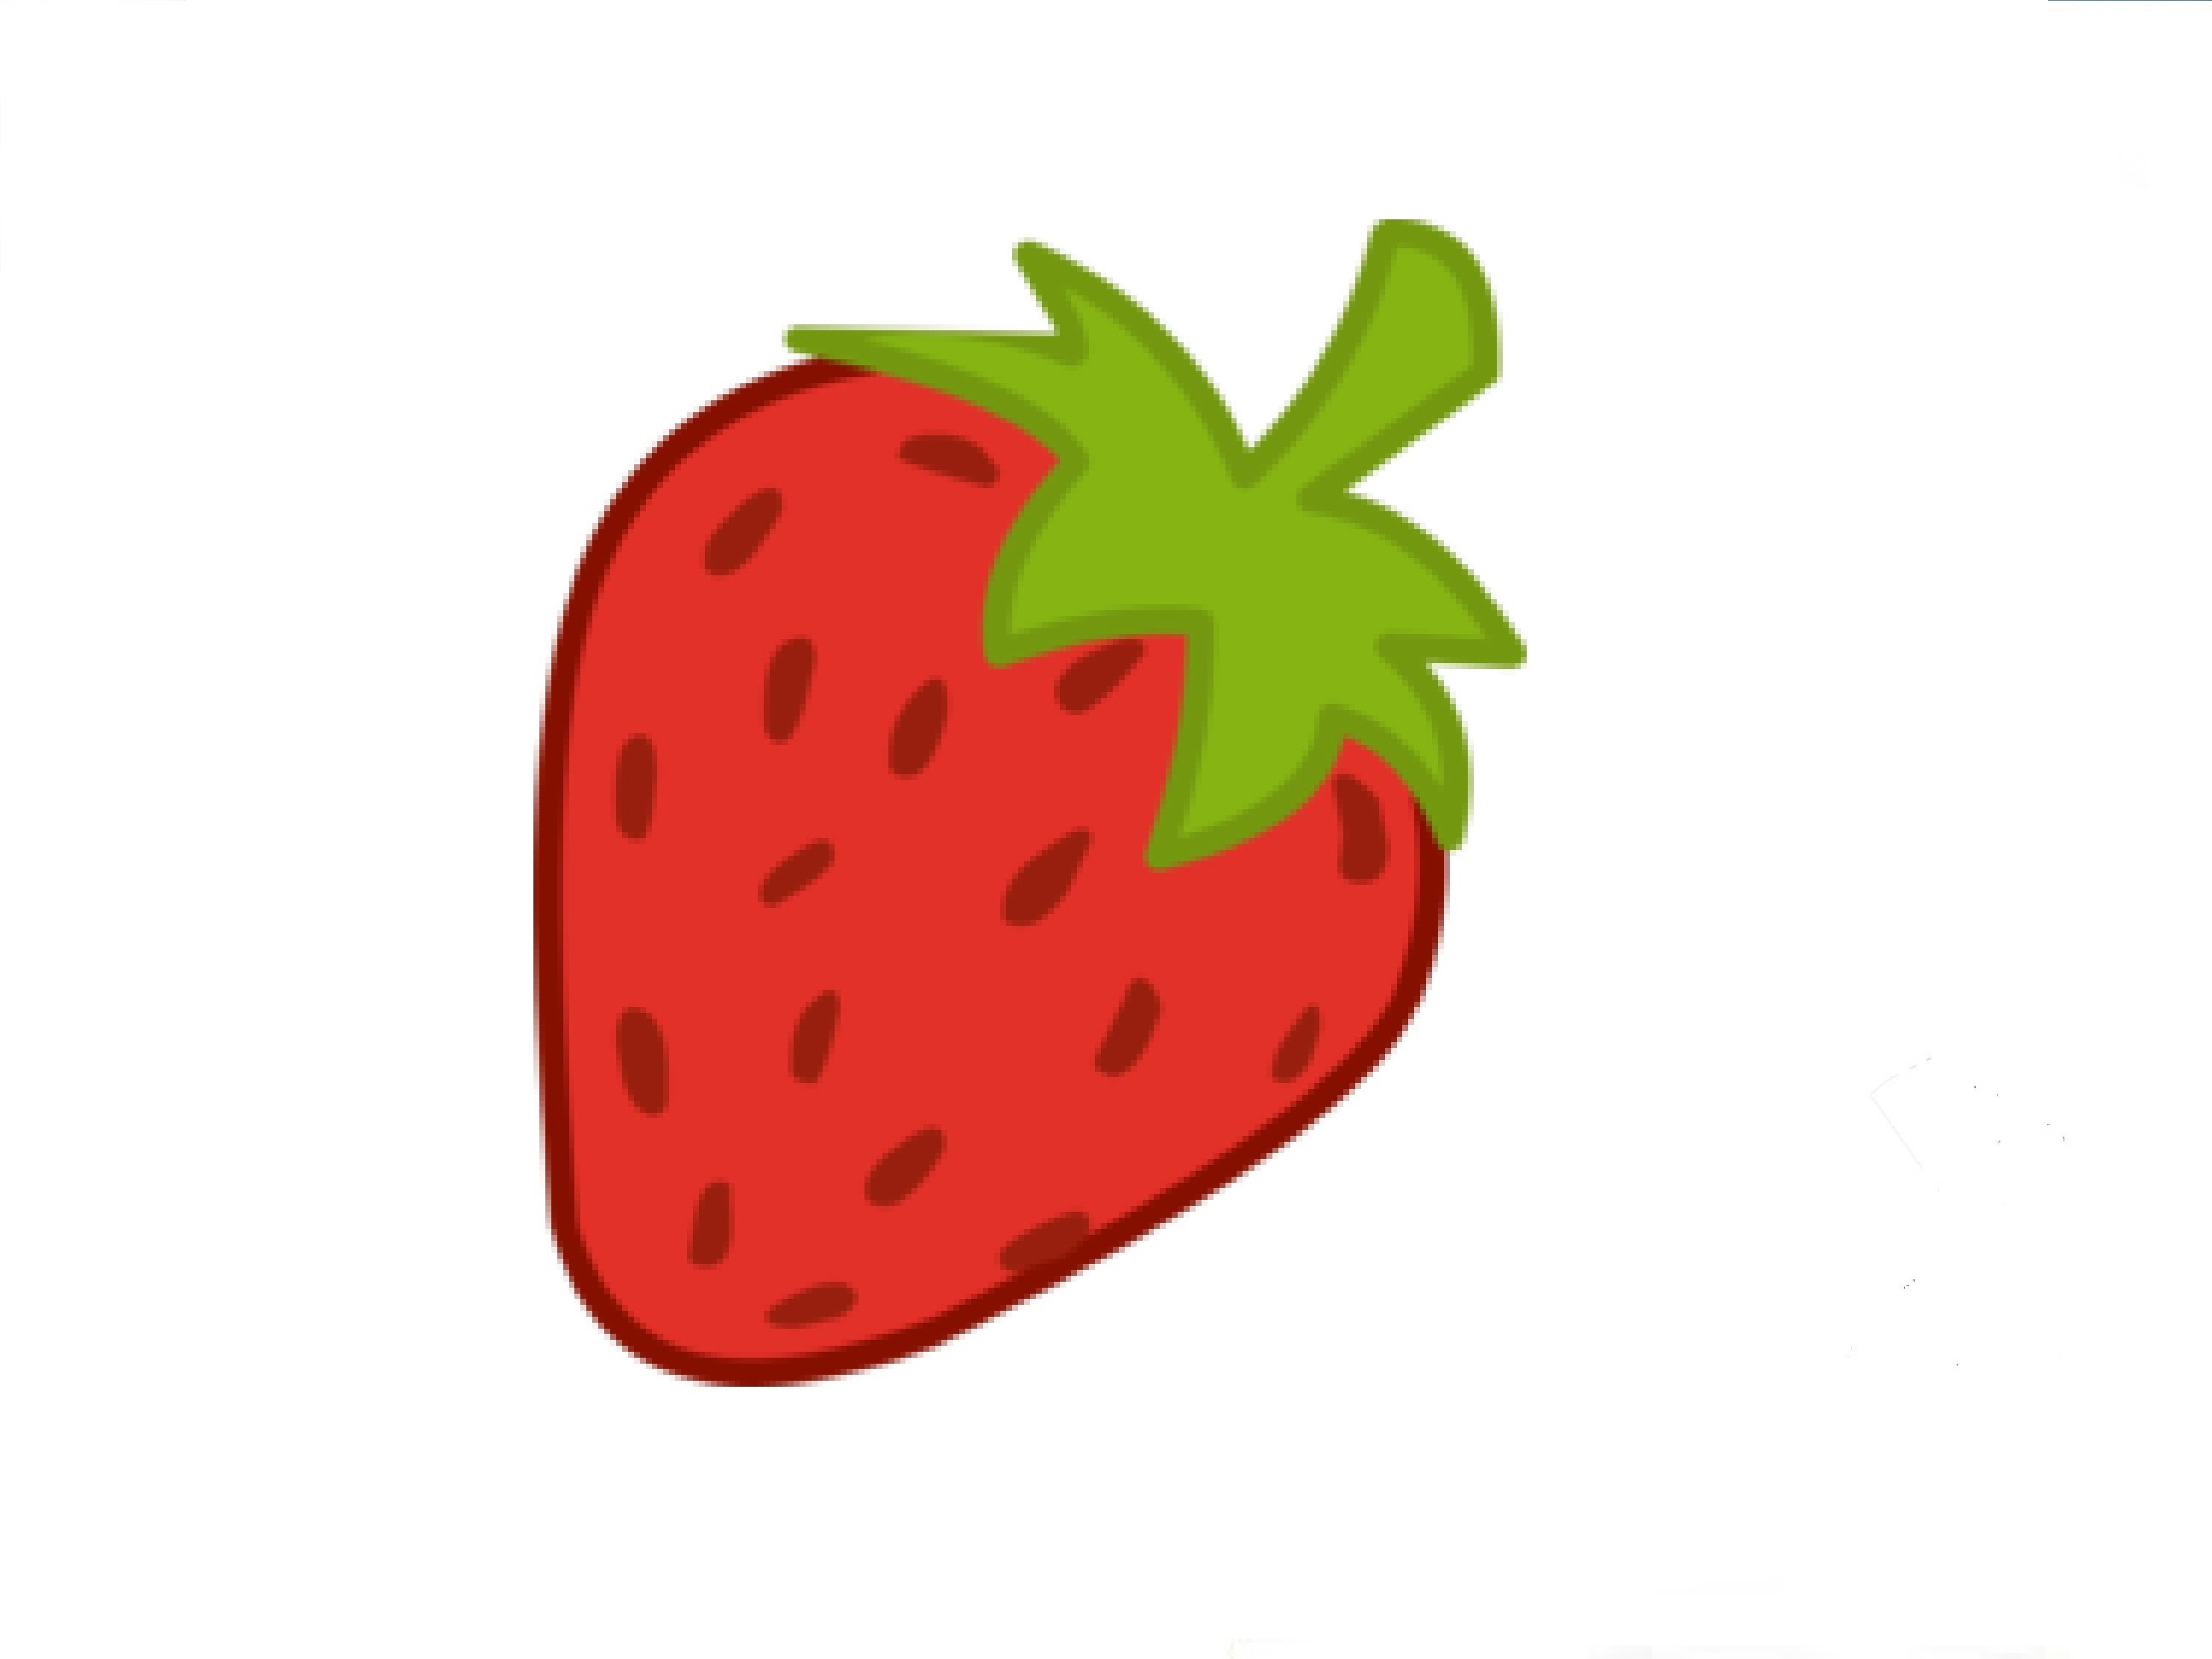 How to Draw a Strawberry / Ð?Ð°Ðº Ð½Ð°Ñ?Ð¸ÑÐ¾Ð²Ð°Ñ?Ñ? ÐºÐ»Ñ?Ð±Ð½Ð¸ÐºÑ? - YouTube